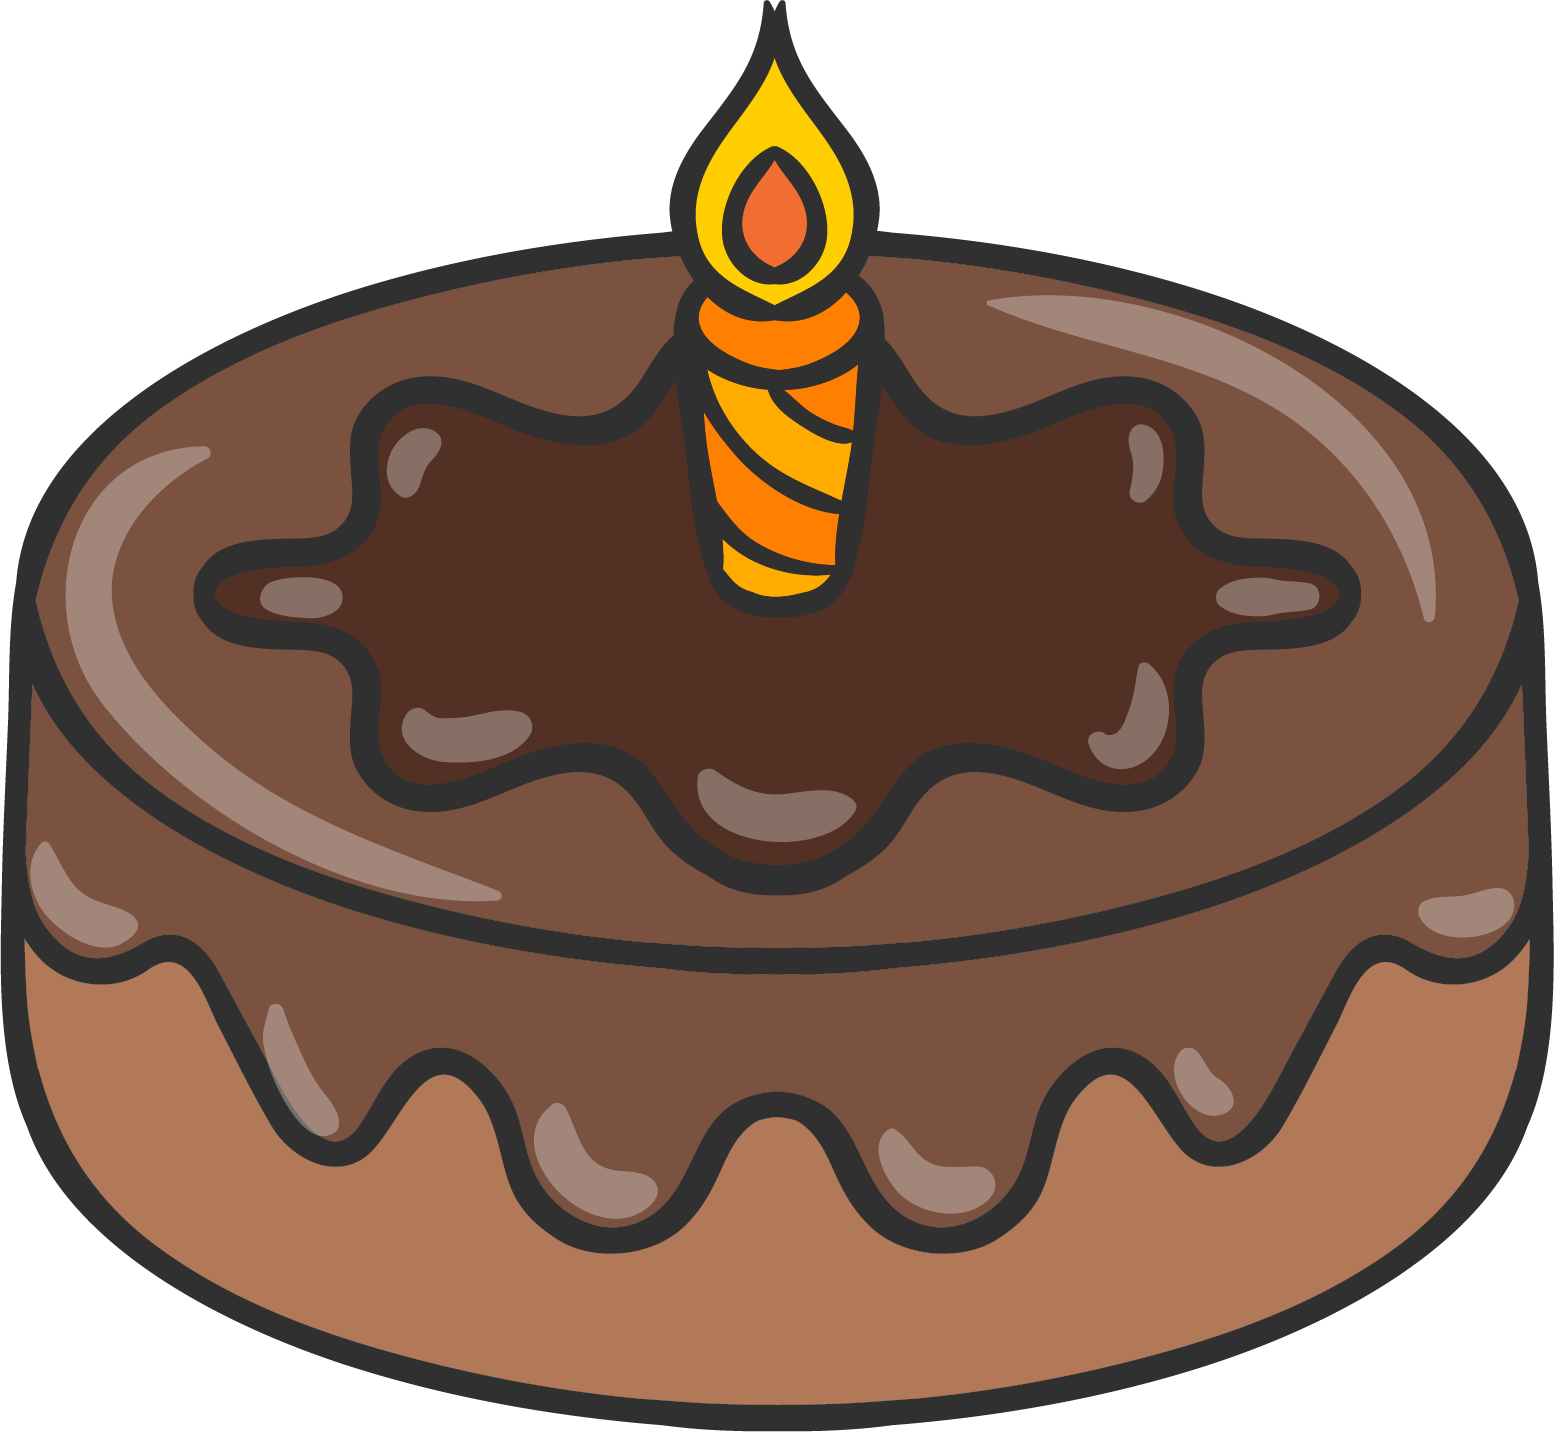 Chocolate Cake Birthday Cake Drawing - Desenho De Um Bolo De Chocolate (1554x1432)